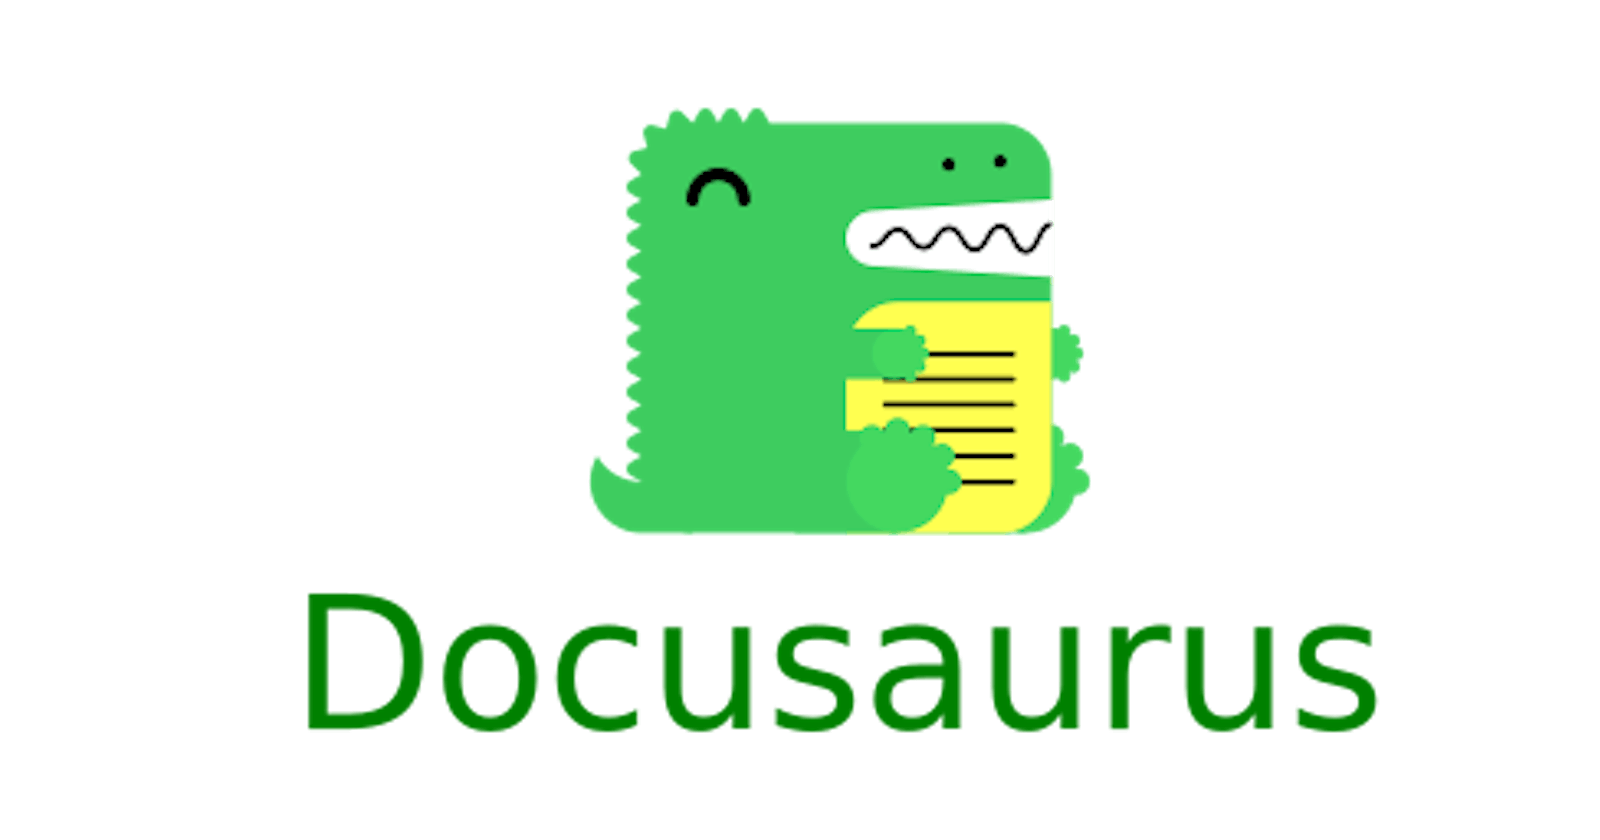 Docusaurus ile Harika Dokümanlar Oluşturalım